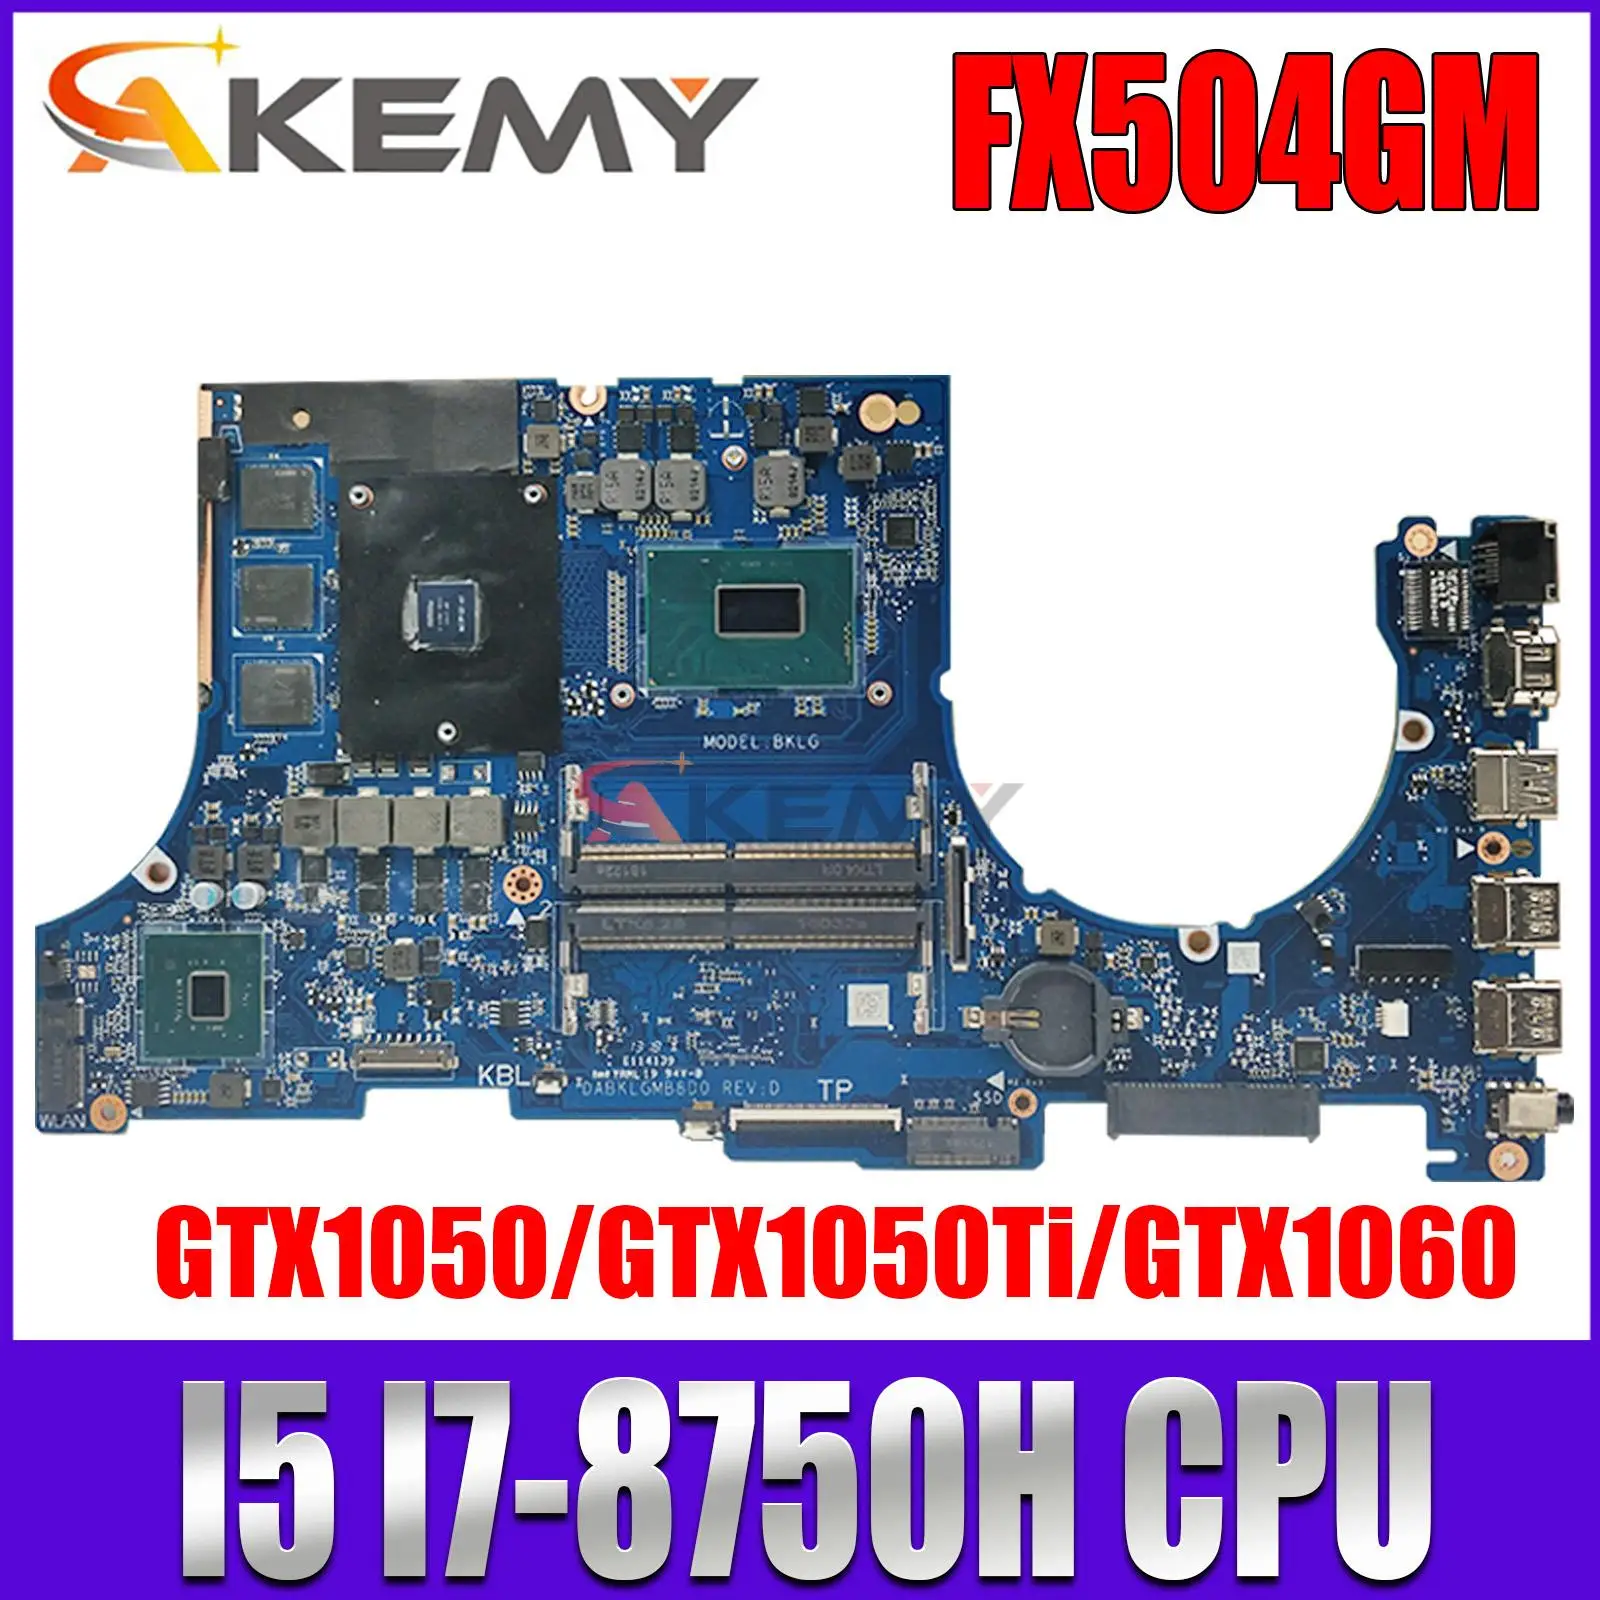 

Notebook FX504GM Mainboard For ASUS FX504GE FX80GM FX80G FX504GD ZX80GM Laptop Motherboard CPU I5 I7 GTX1050 GTX1050Ti GTX1060